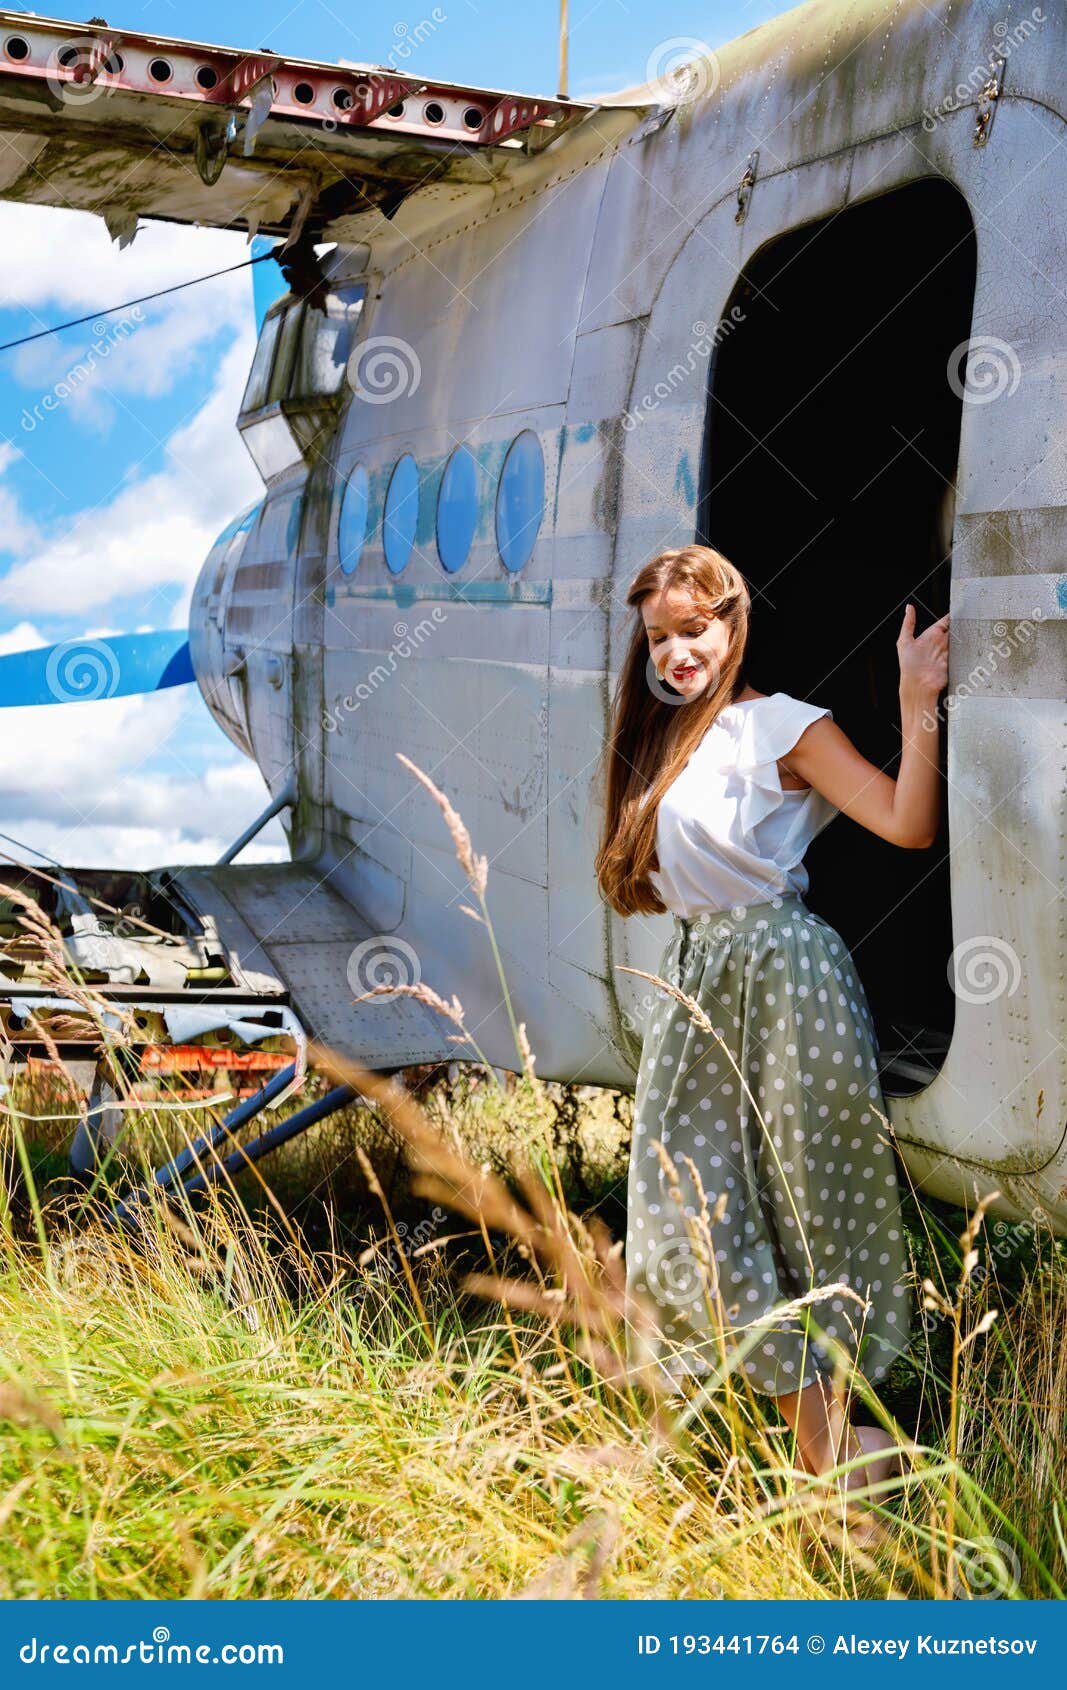 Mujer Joven Vestida Con Prendas De Vestir Se Para Al Lado De Un Avión  Abandonado Foto de archivo - Imagen de roto, lifestyle: 193441764